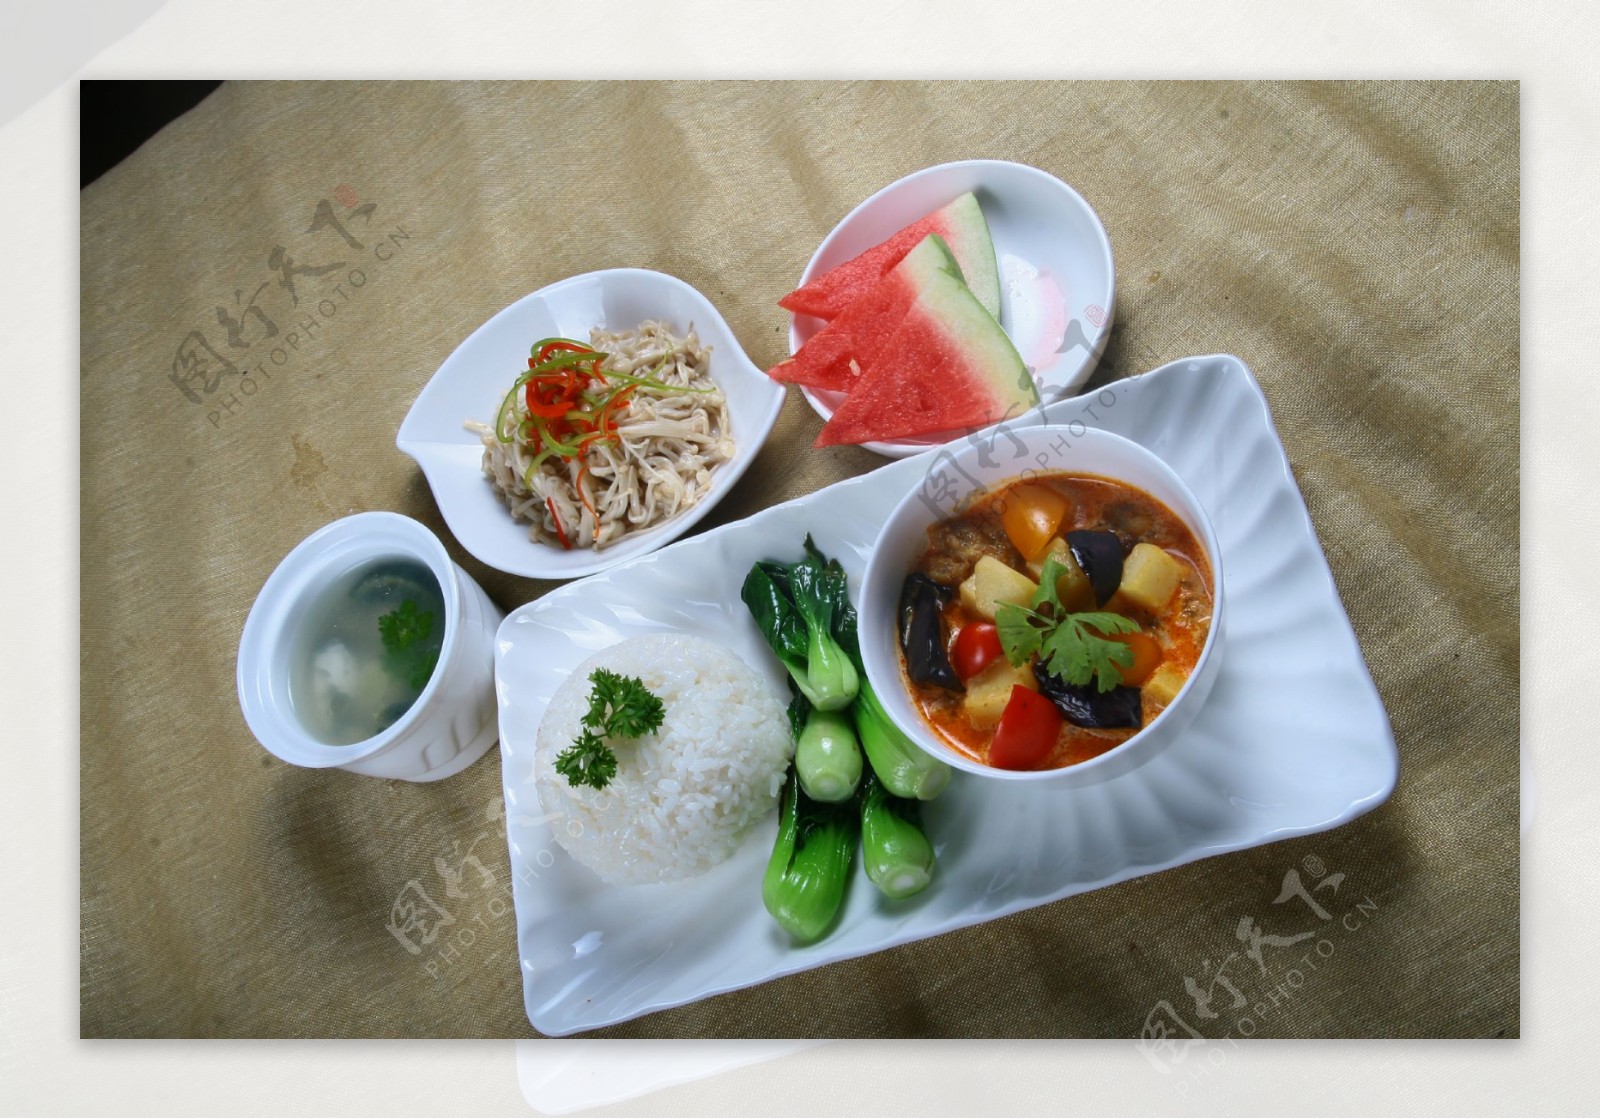 东南亚式套餐红咖喱鸡图片